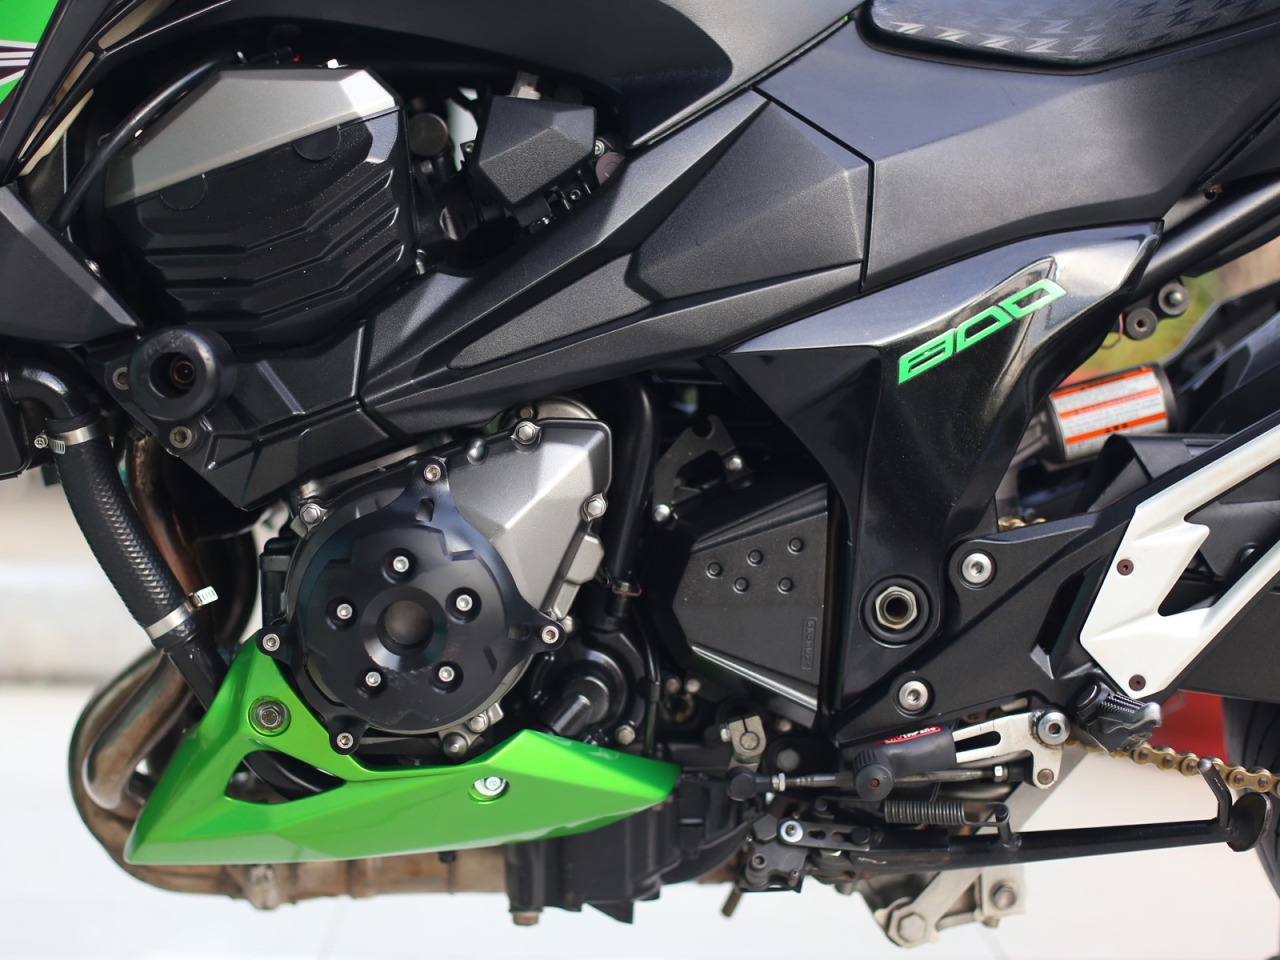 153. Kawasaki Z800 2015